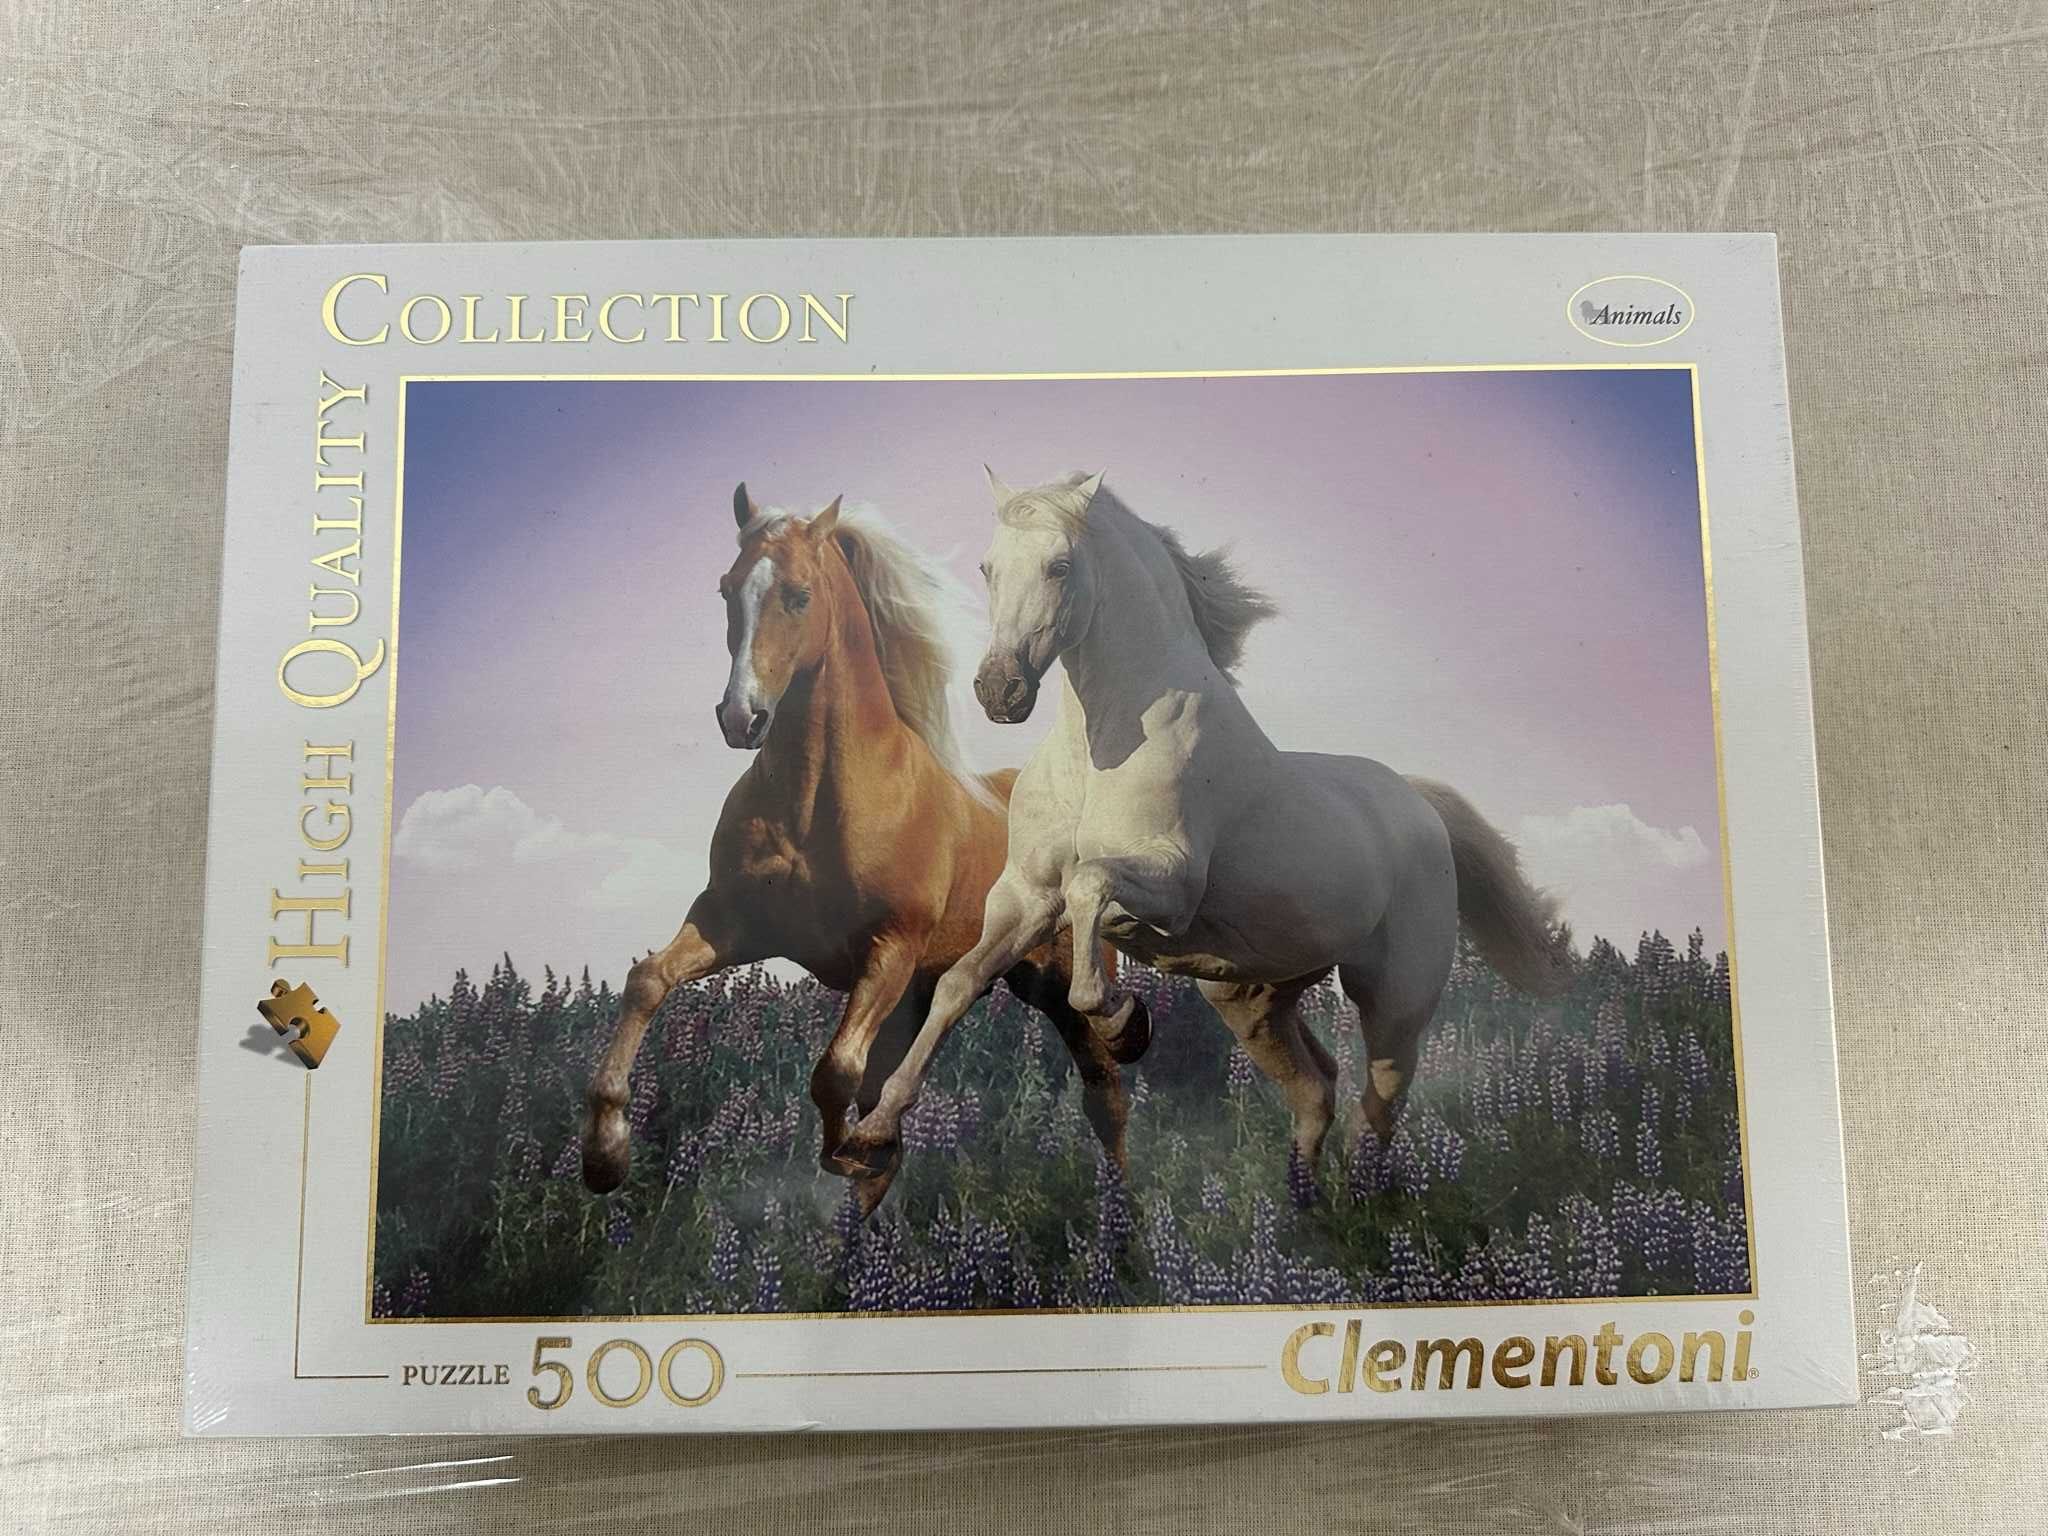 Puzzle 500 peças - Clementoni